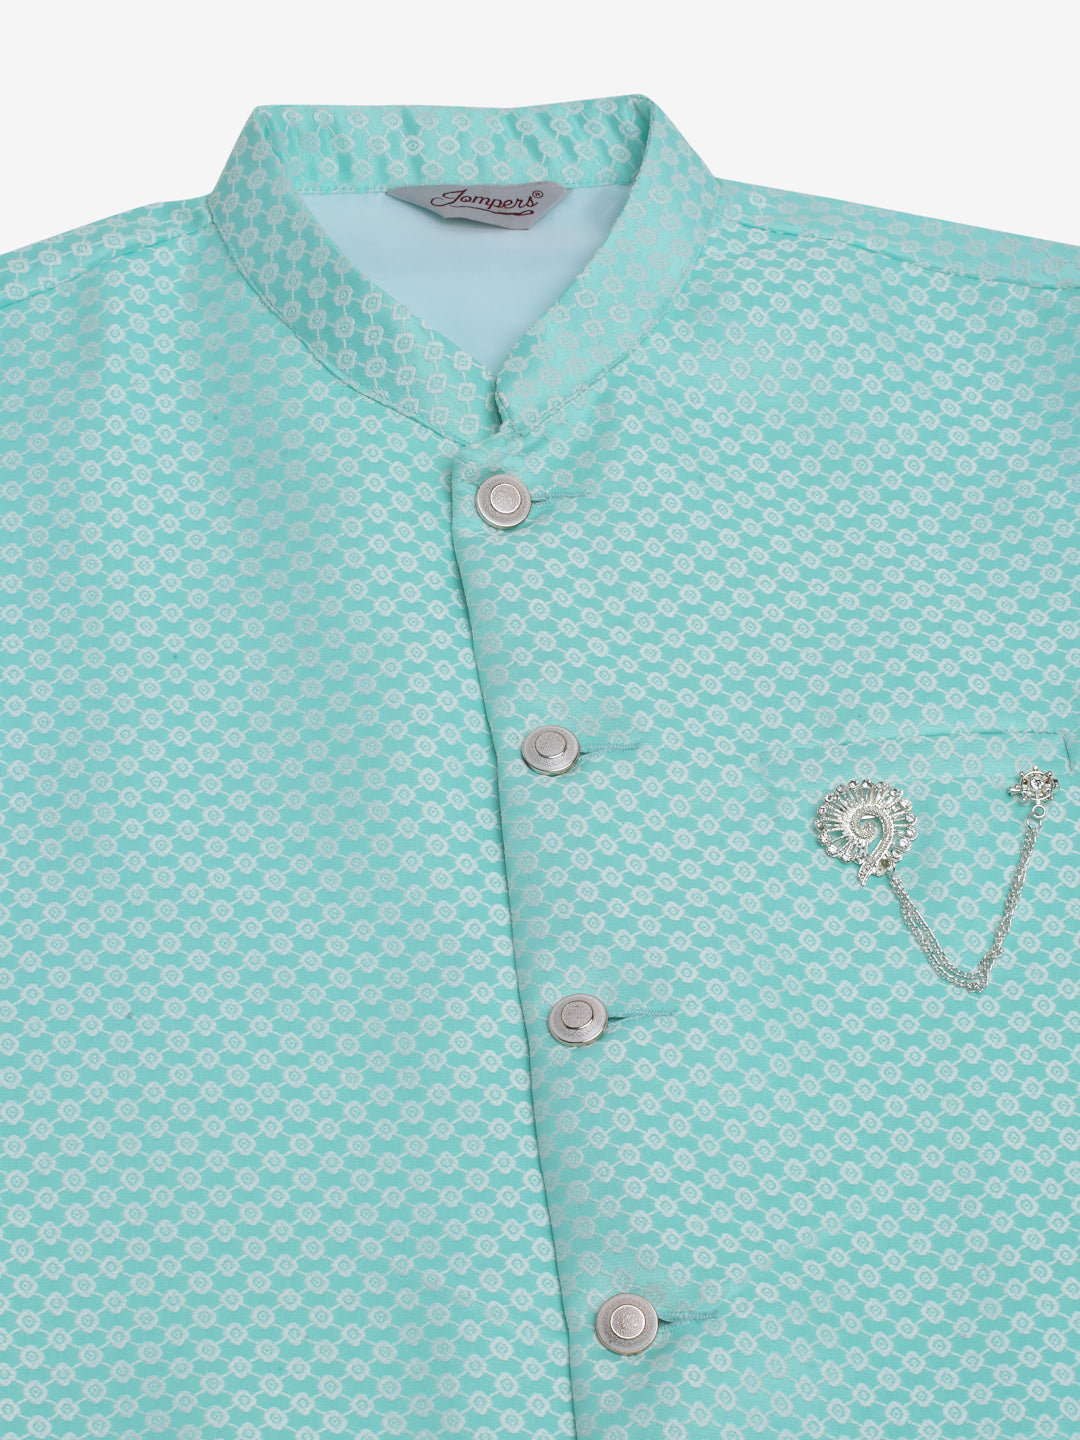 Jompers Men's Sky Blue Woven Design Waistcoats - Distacart